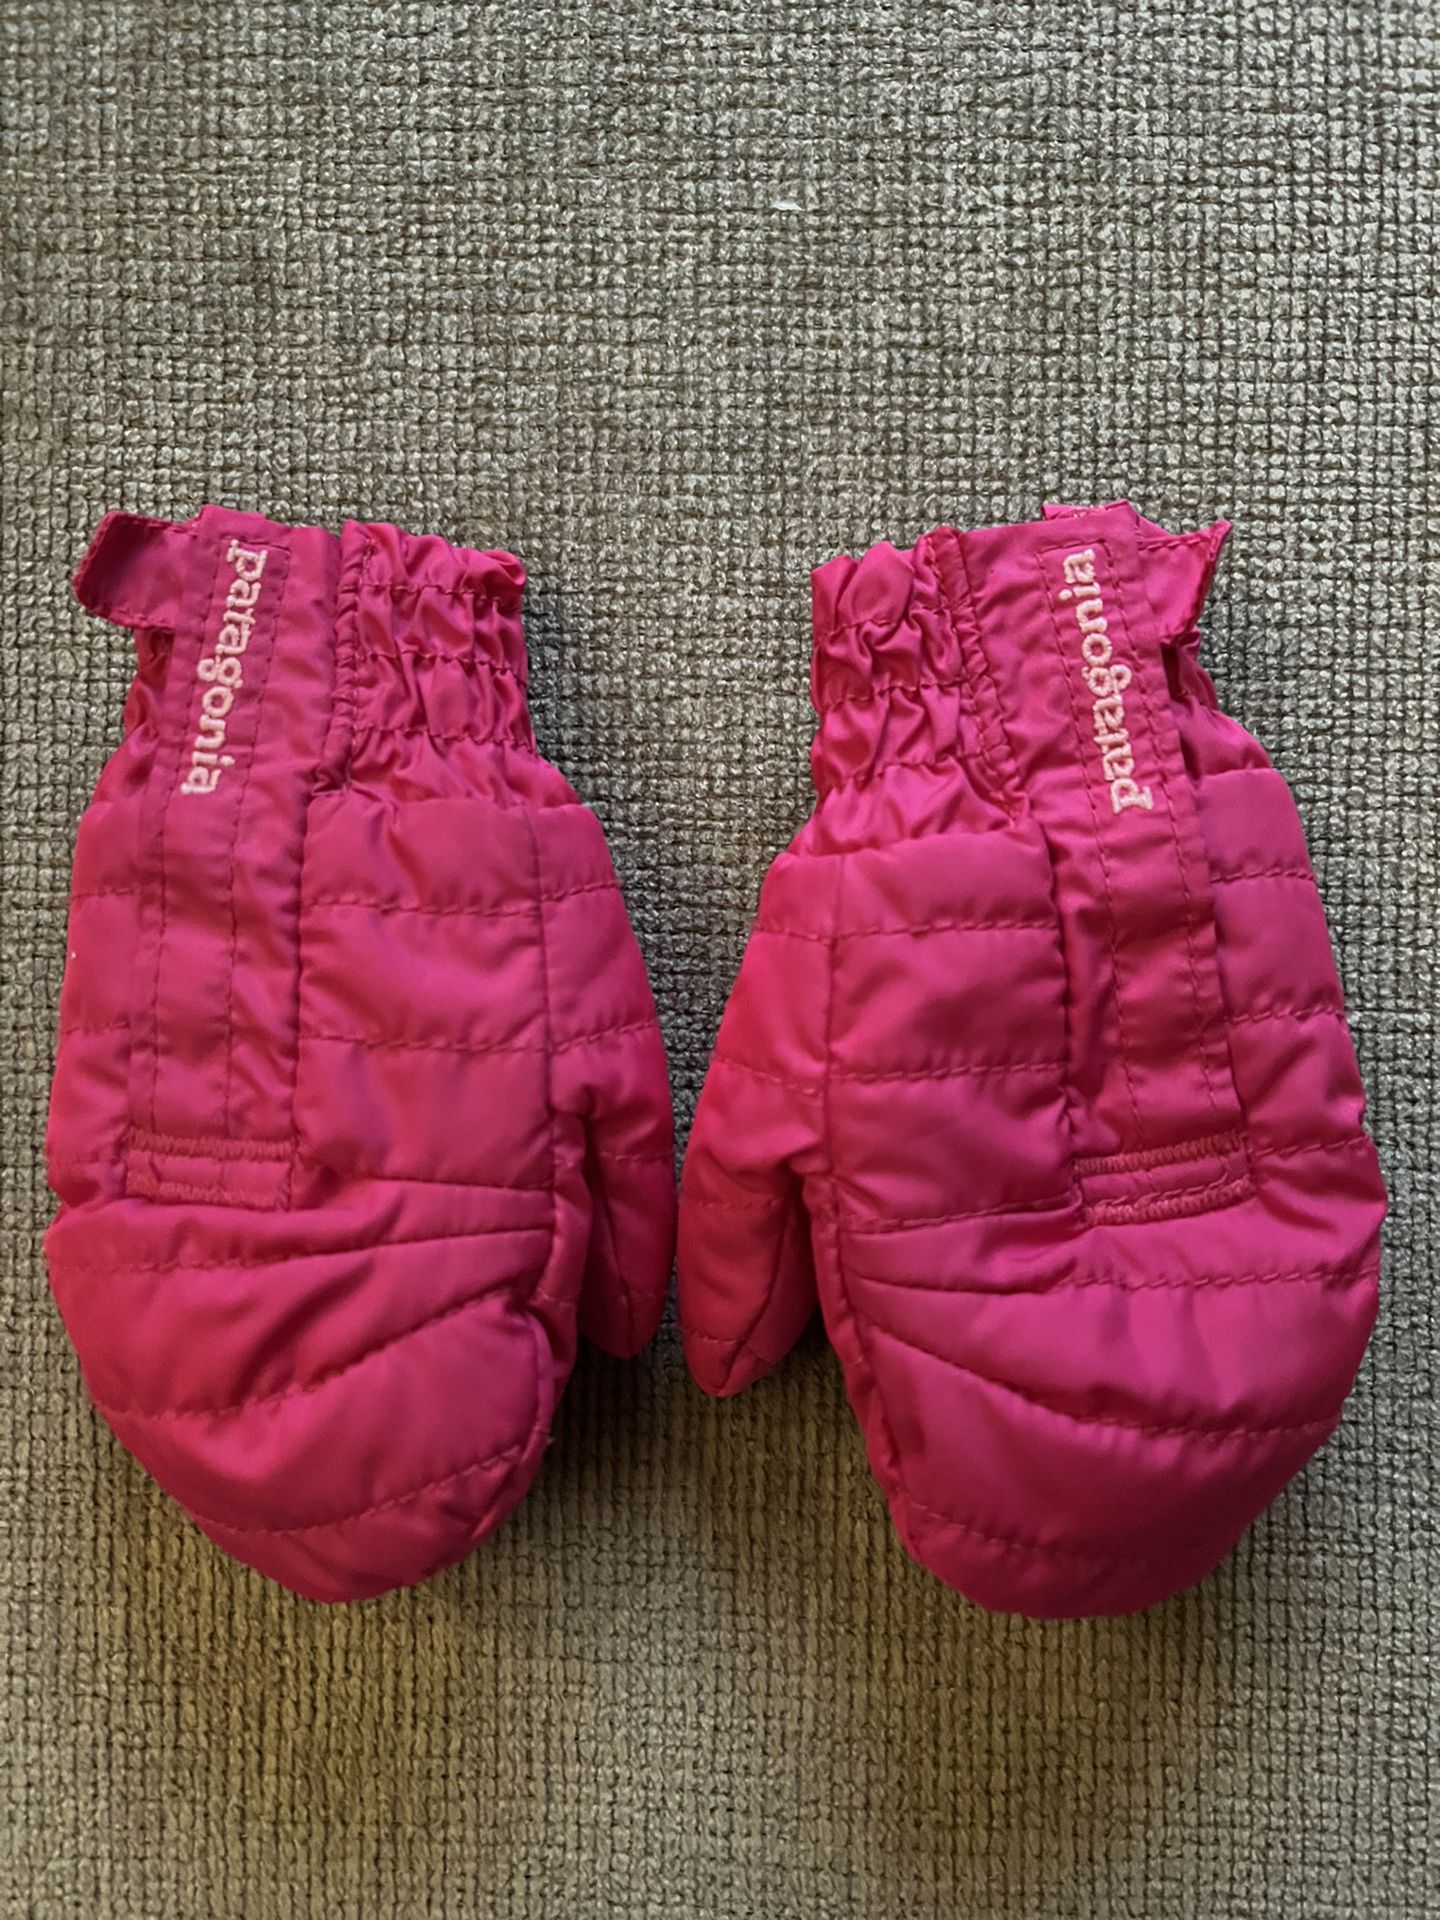 Patagonia toddler mittens size S - 